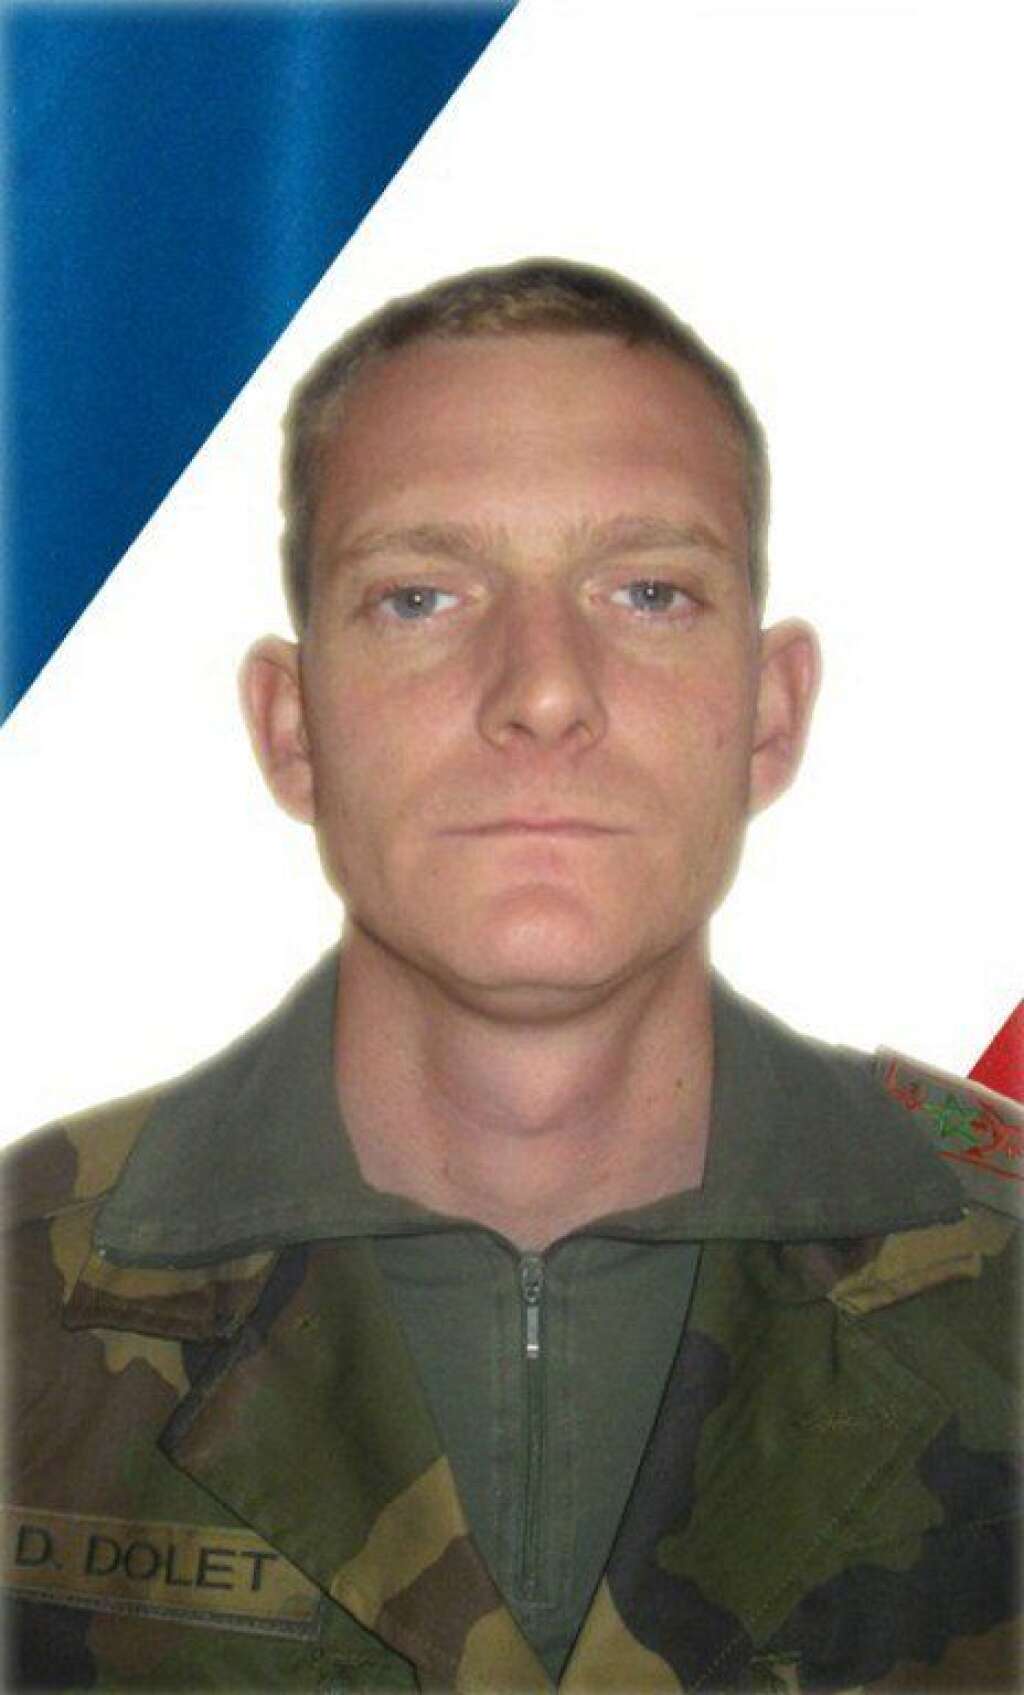 Damien Dolet - 23 février 2014: le caporal Damien Dolet du régiment d’infanterie de chars de marine (RICM) est grièvement blessé dans un accident de la circulation lors d’une mission de reconnaissance à bord d’un véhicule blindé à l’est de la ville de Bouar.